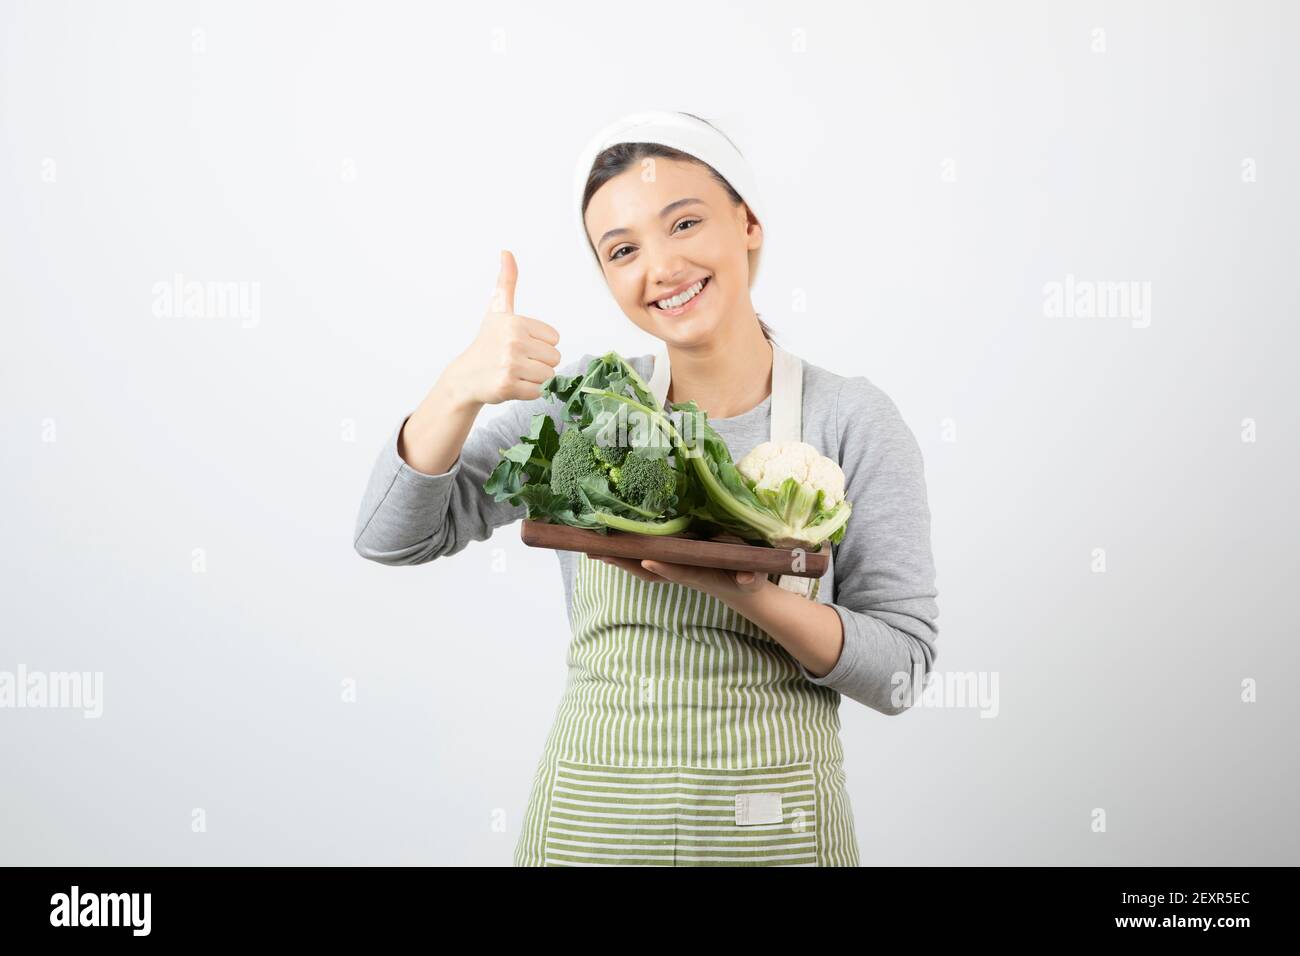 Immagine di una donna sorridente attraente con un piatto di legno di cavolfiori Foto Stock